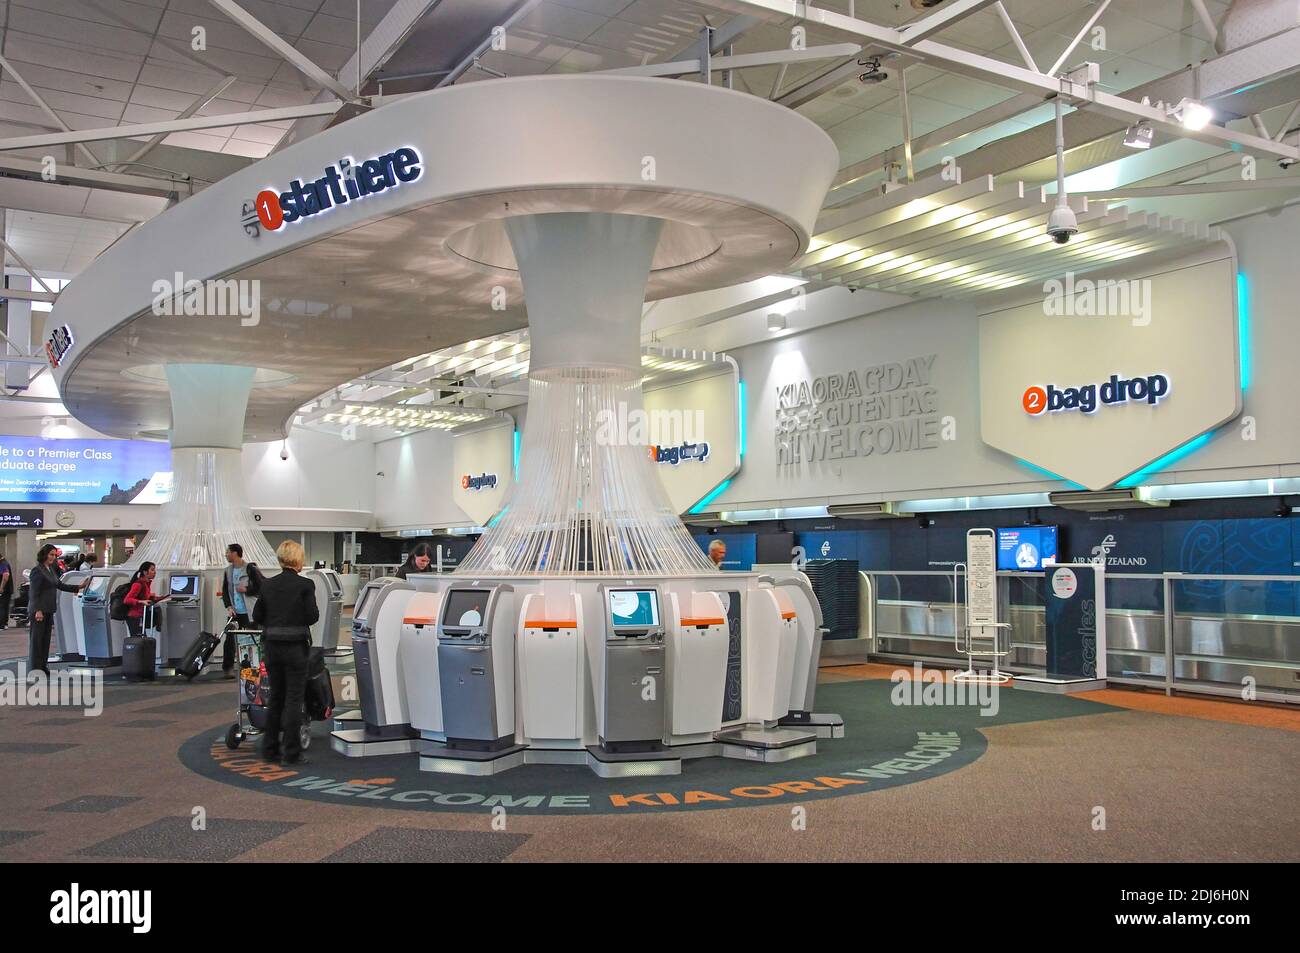 Terminales de check-in, la Terminal de vuelos nacionales, el aeropuerto internacional de Auckland, Auckland, región de Auckland, North Island, Nueva Zelanda Foto de stock